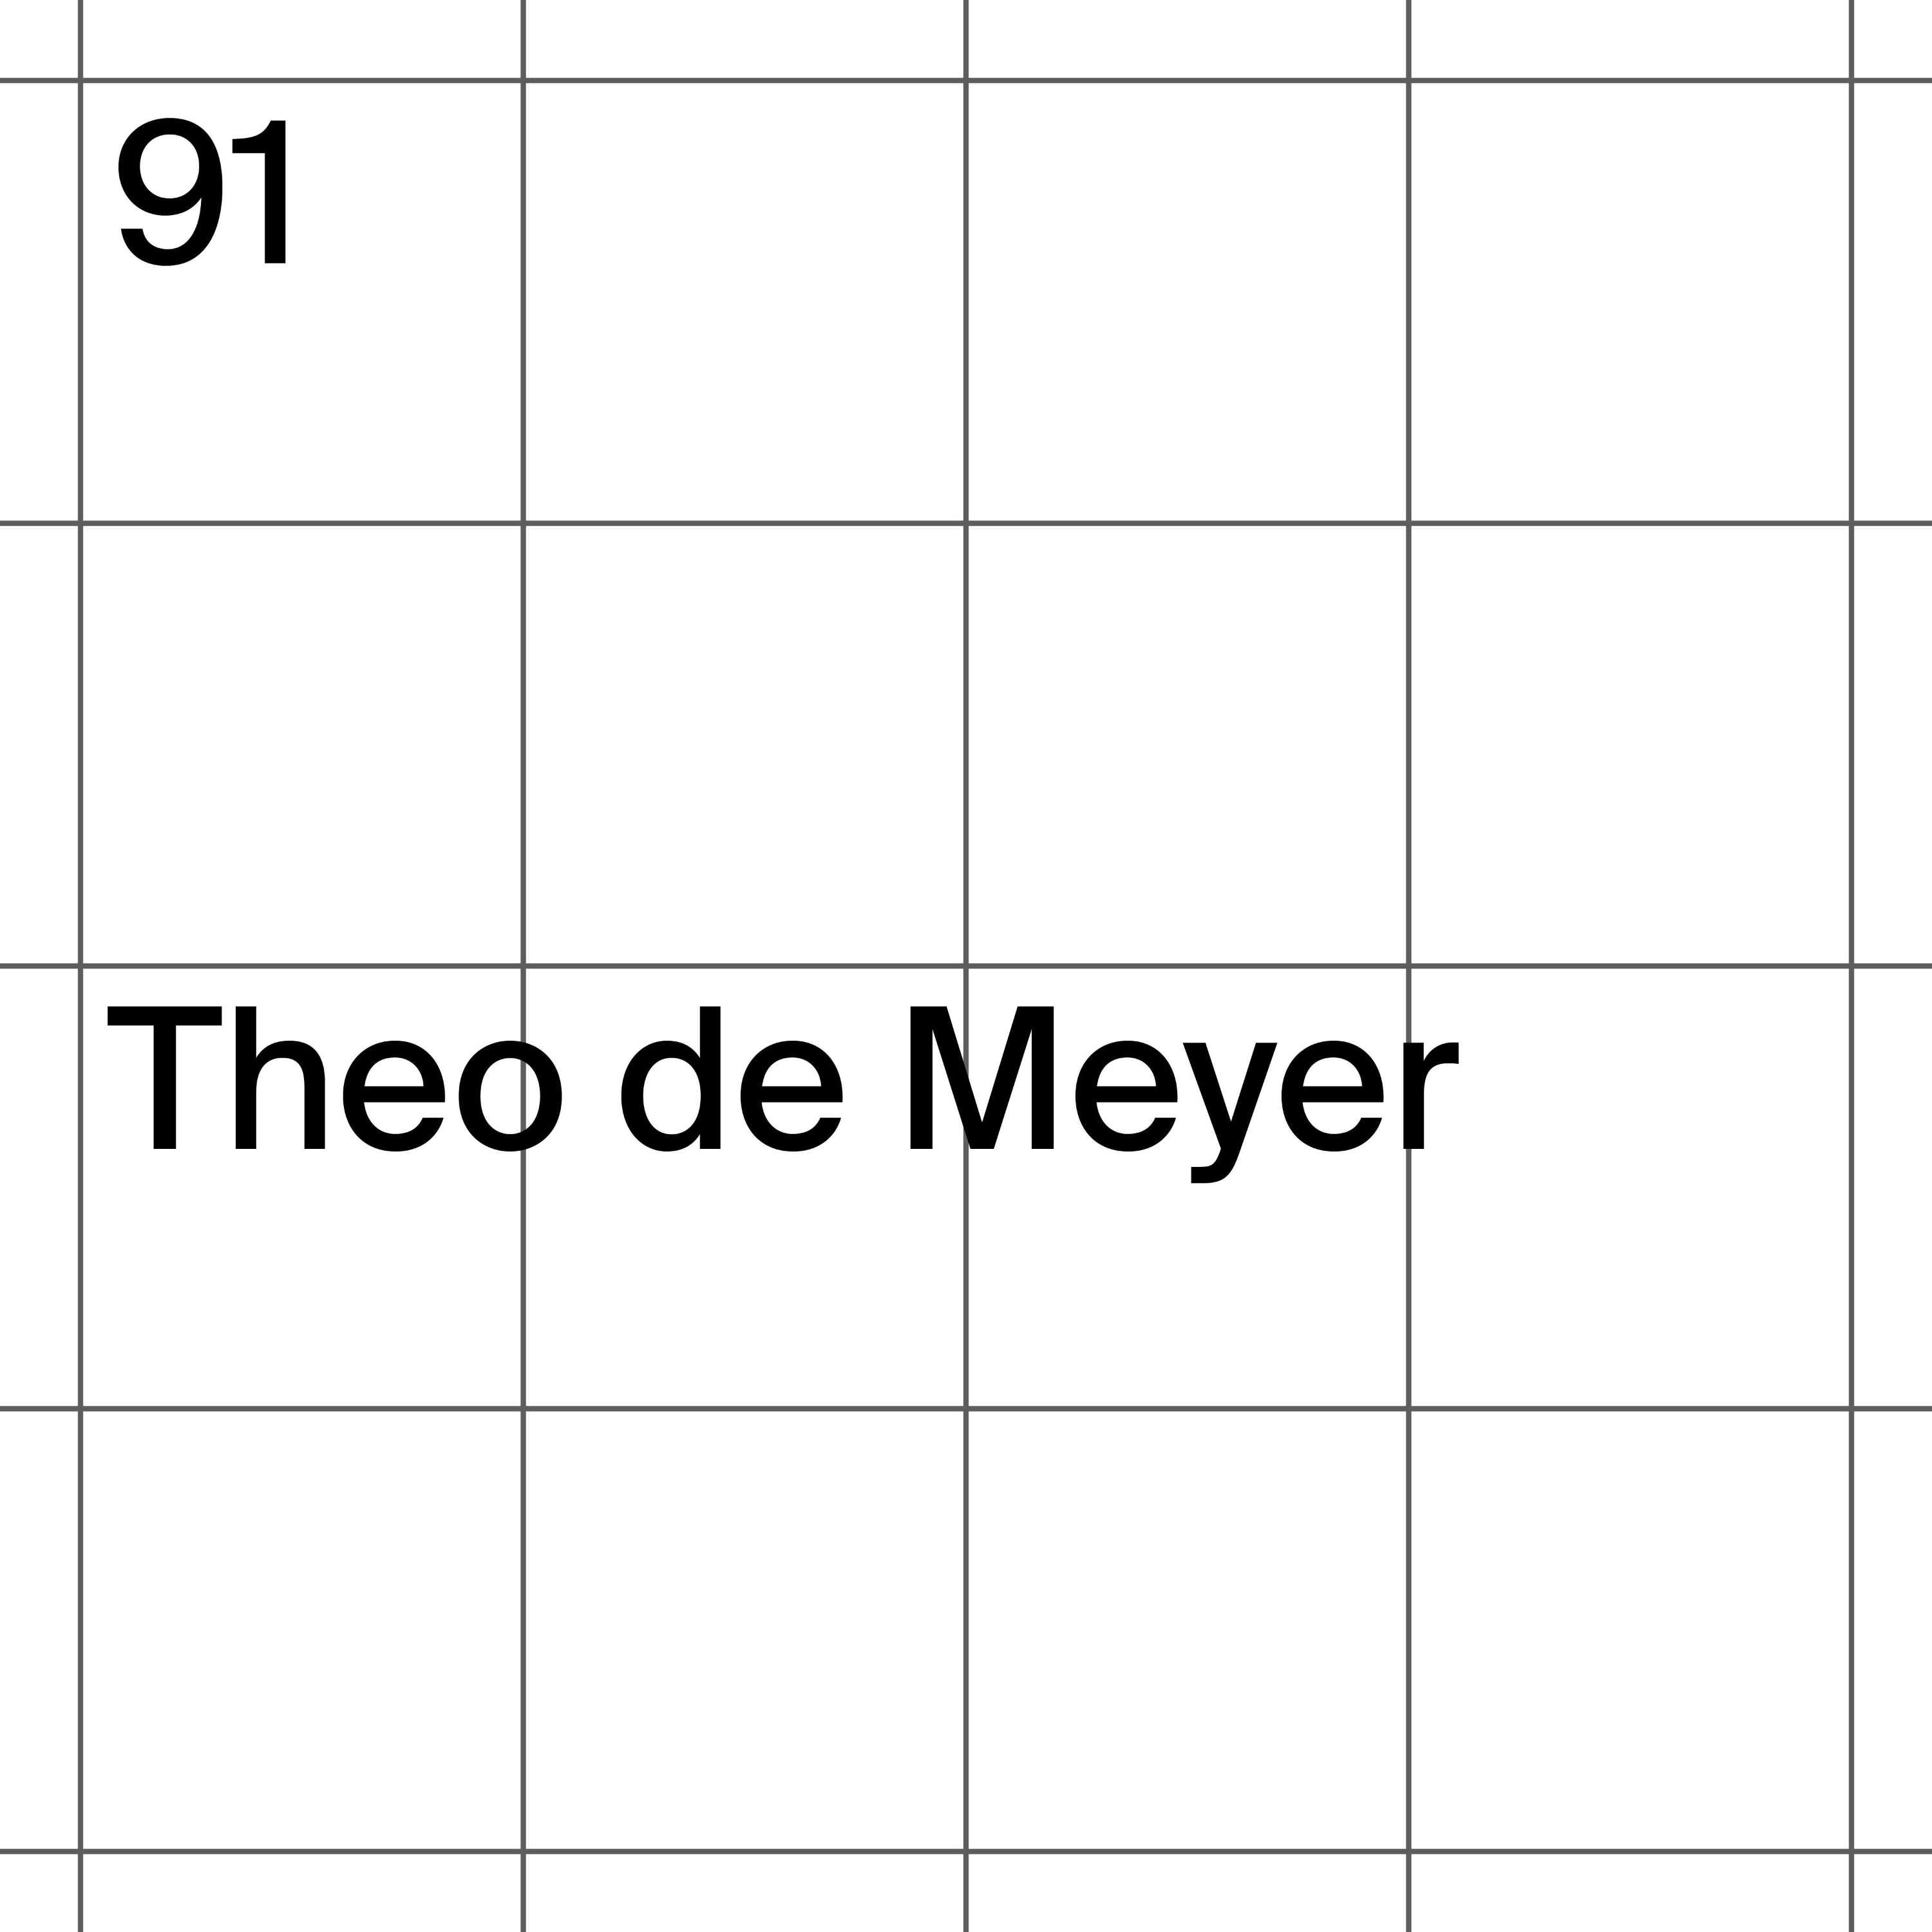 91: Theo de Meyer